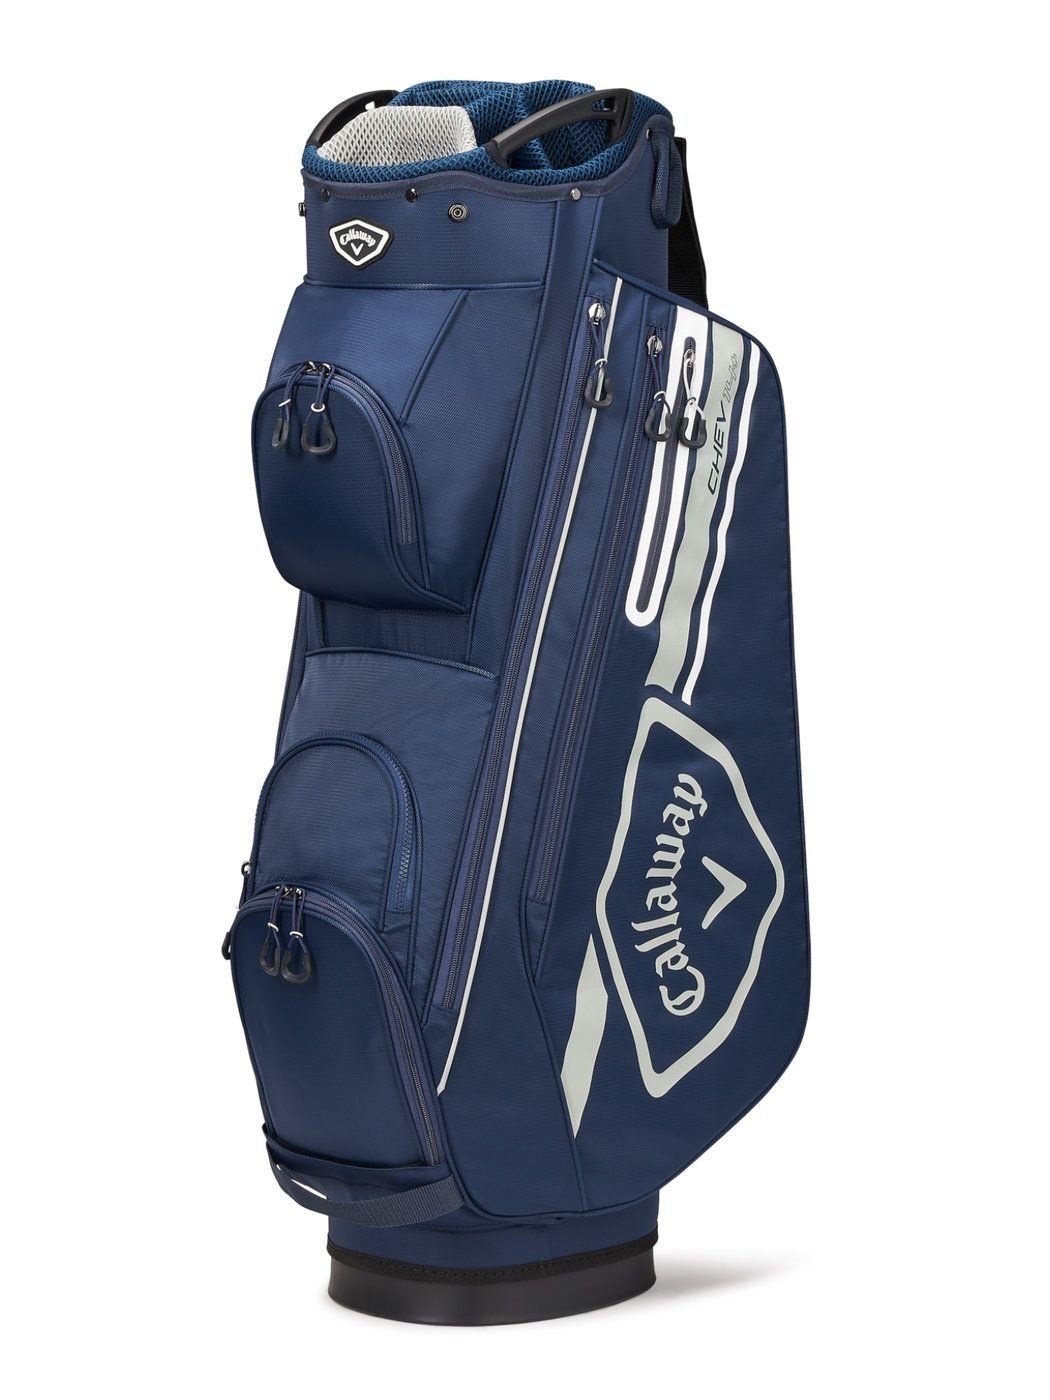 Callaway golftas Chev 14+ Cart Bag navy - Golftassen, Golfclubs, online kopen bij Golfers Point | Golfers Point